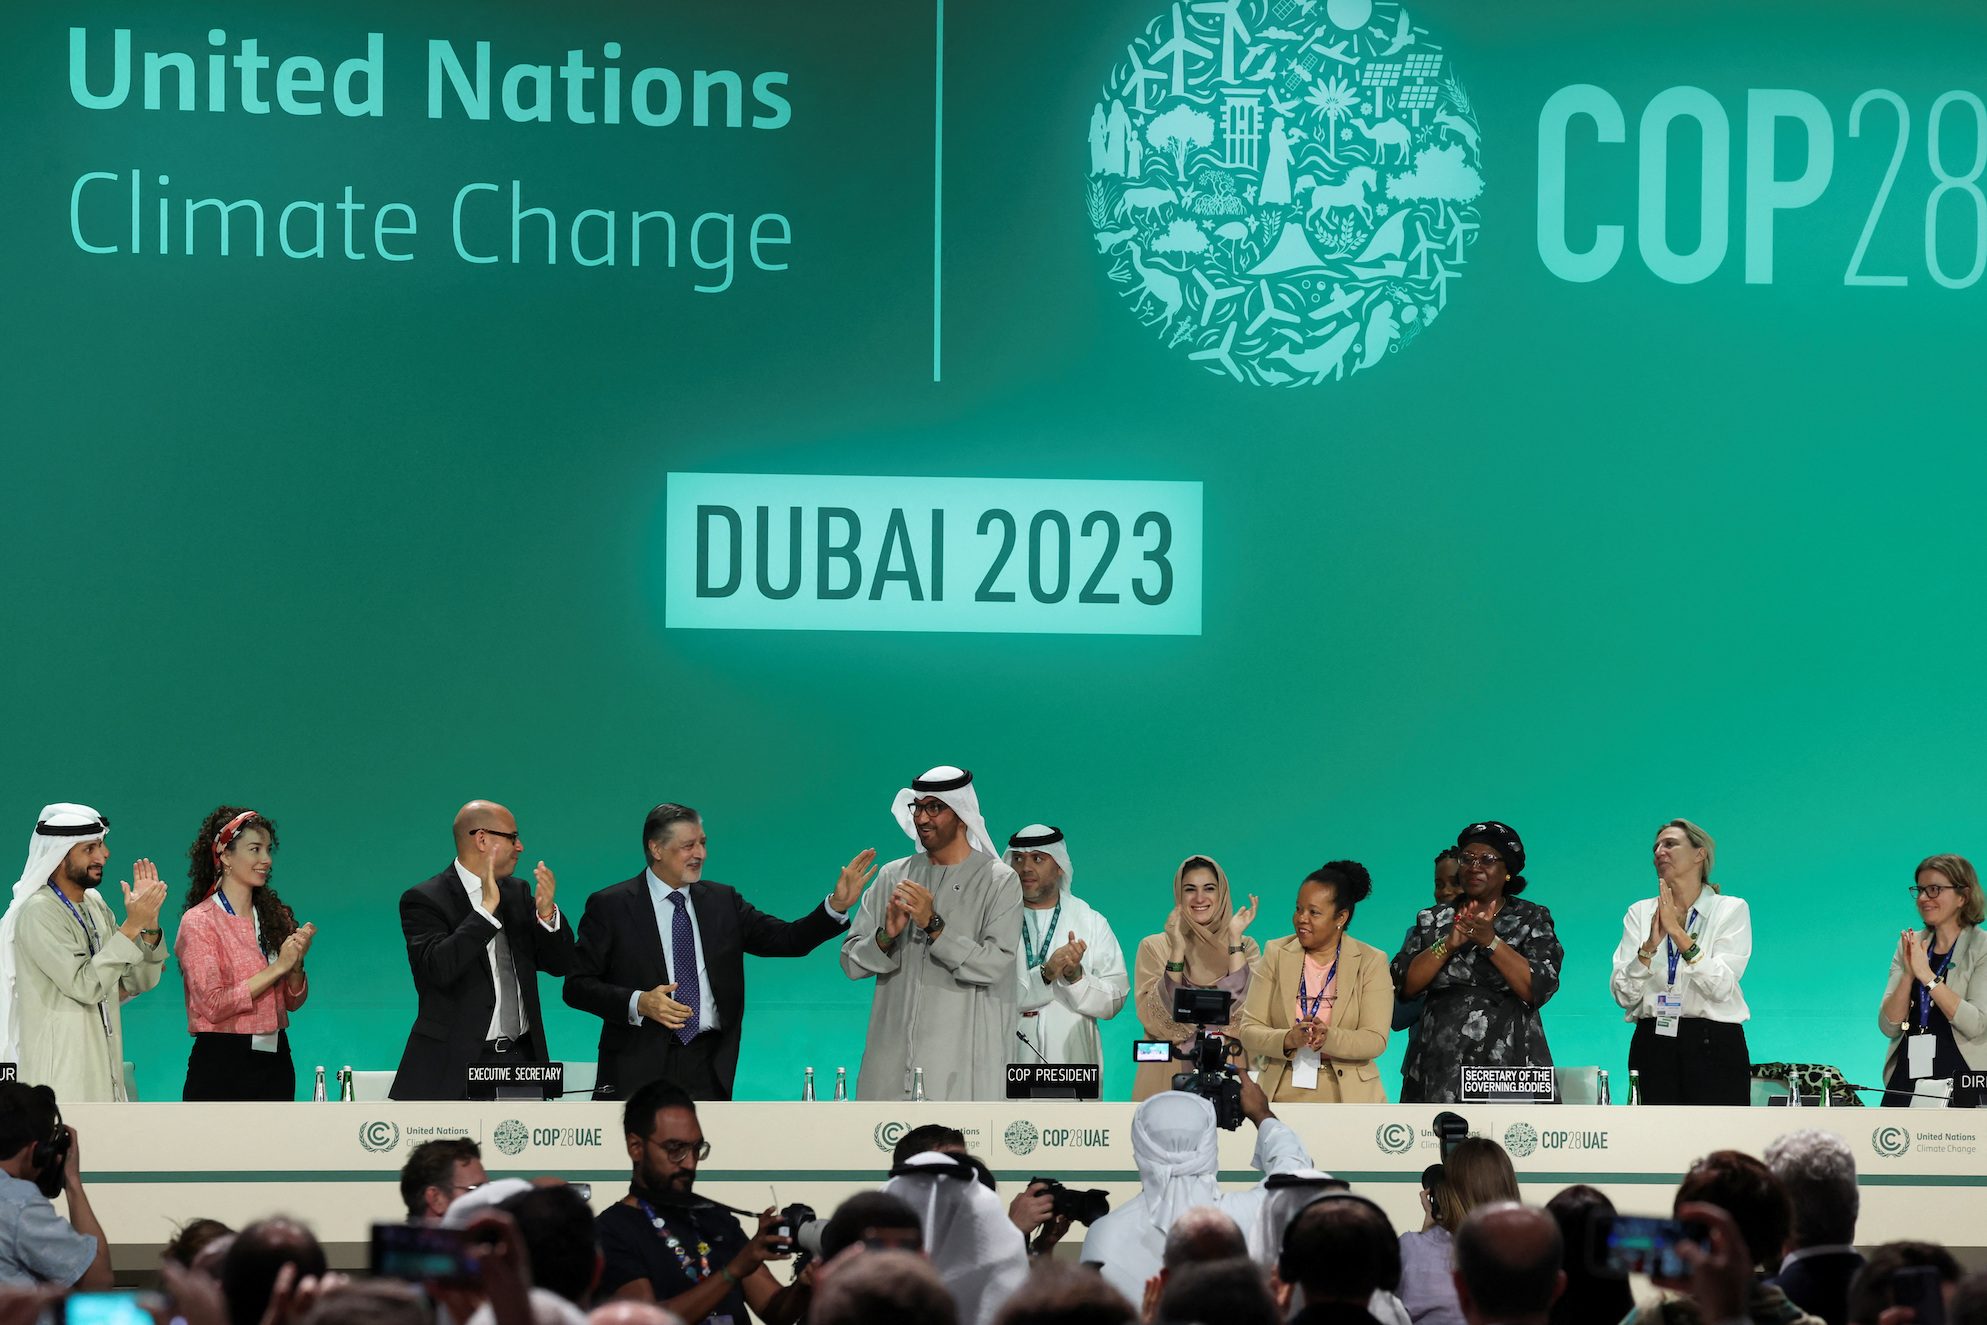 Historic? PH civil society at COP28 says climate deal ‘falls short’